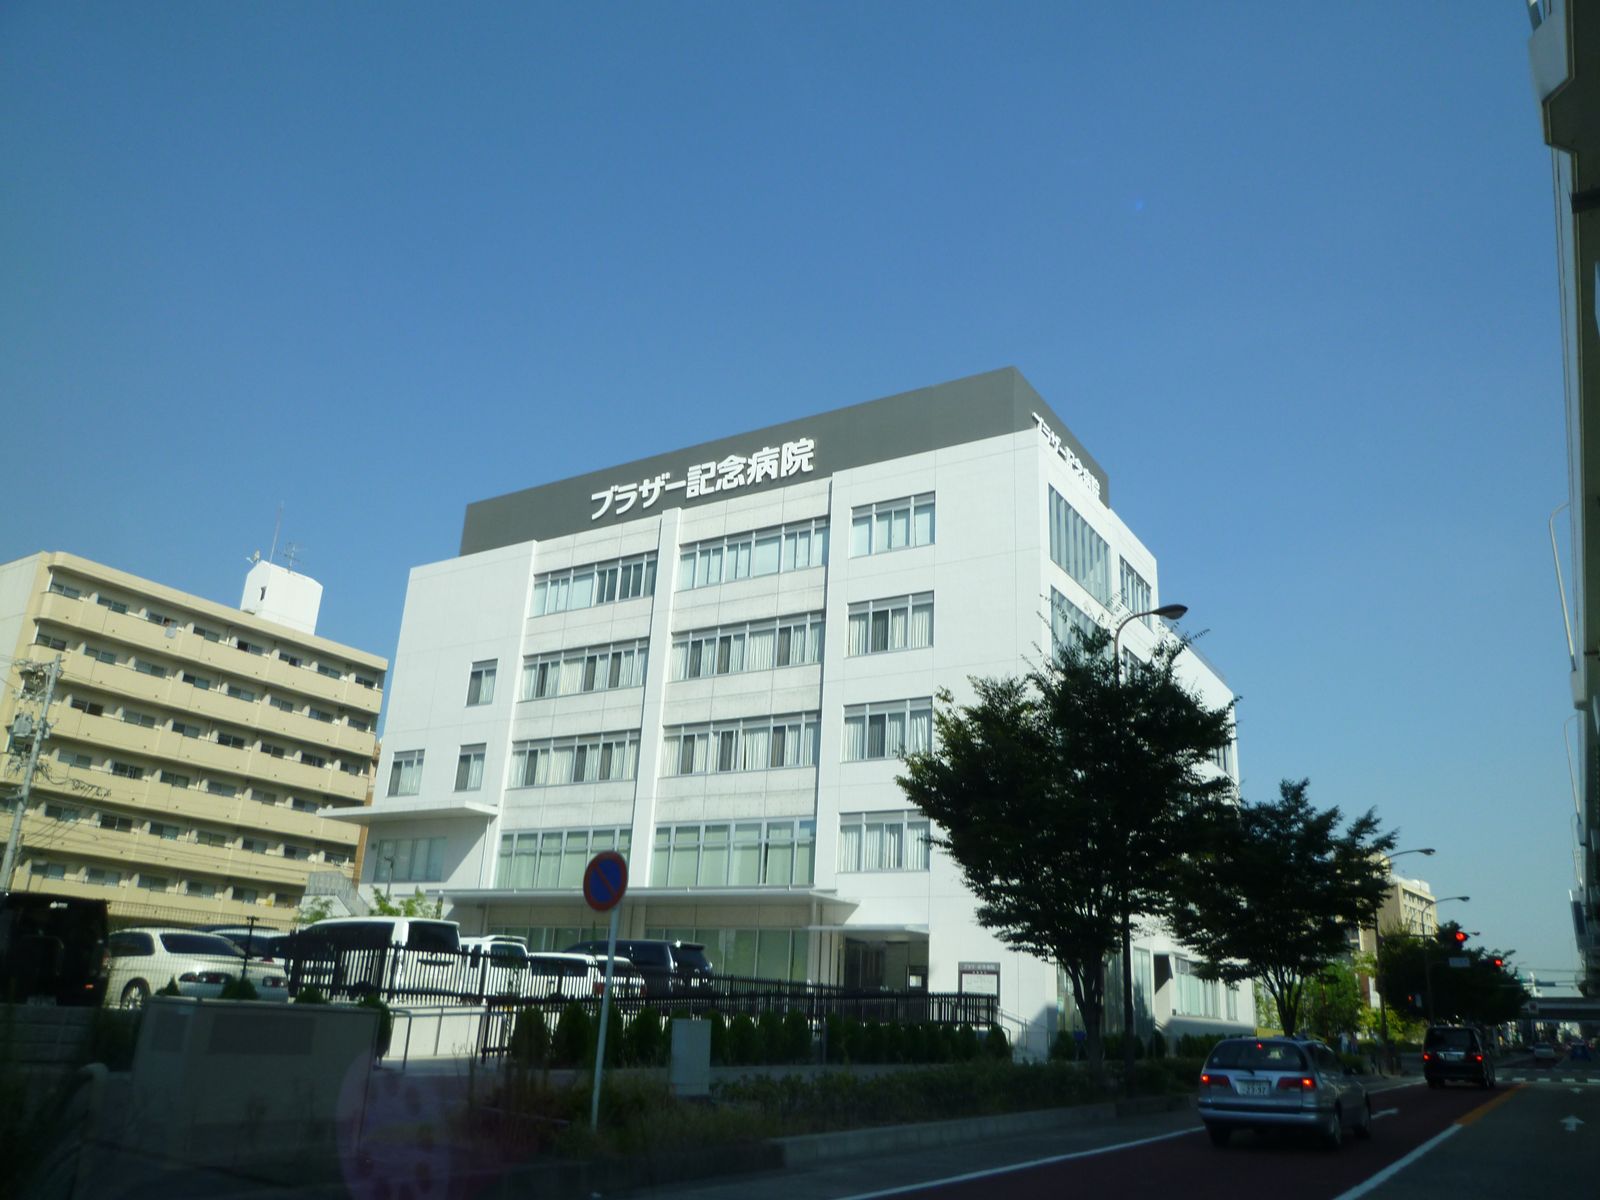 Hospital. 621m until Brother Memorial Hospital (Hospital)